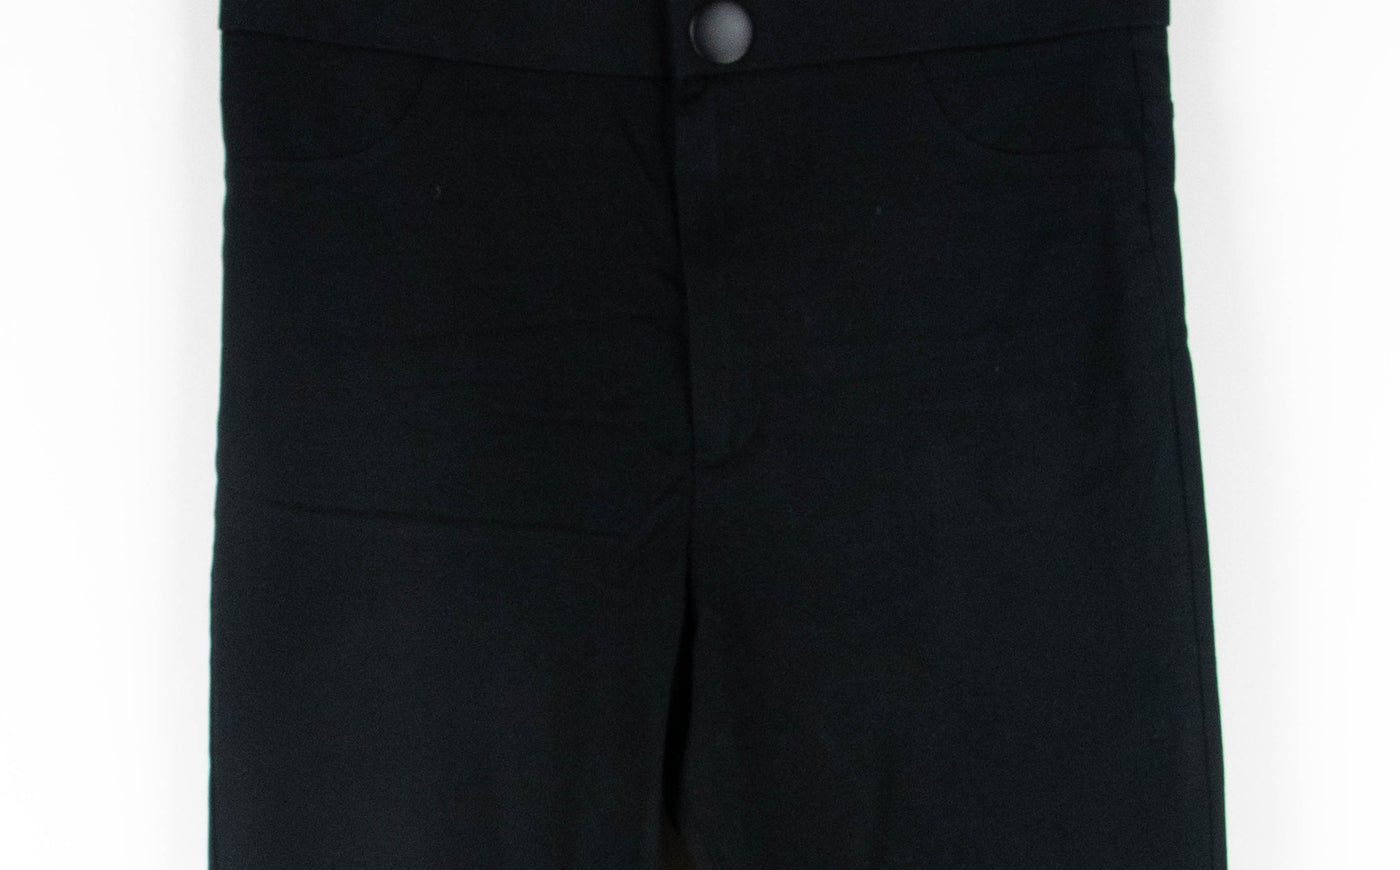 Pantalón negro tipo sastre